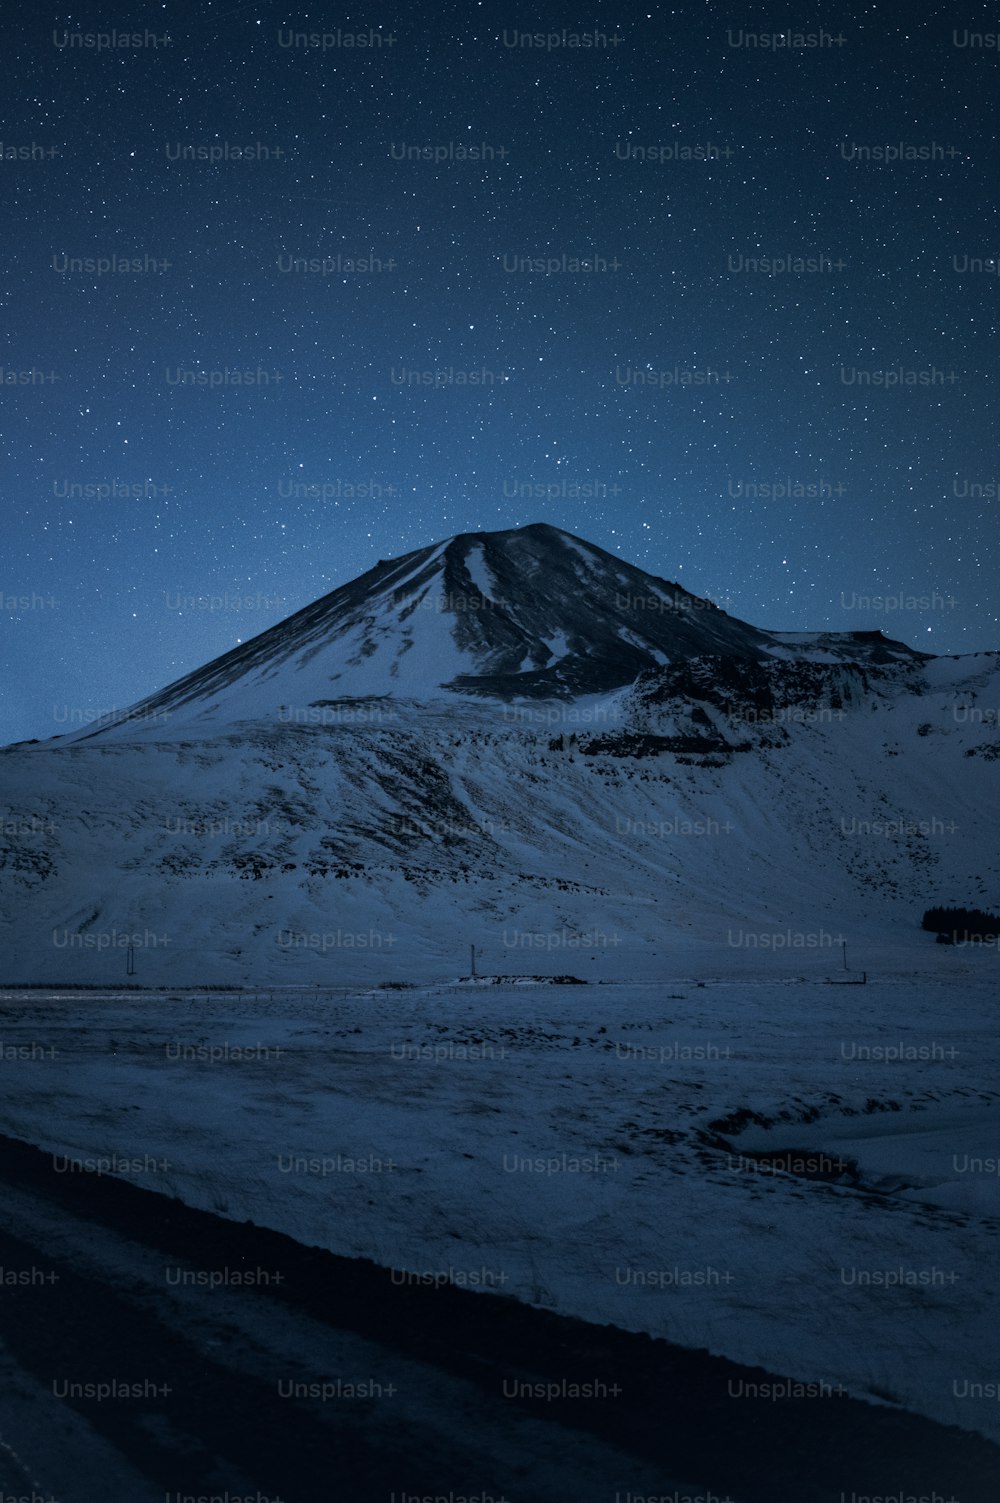 uma montanha coberta de neve sob um céu noturno